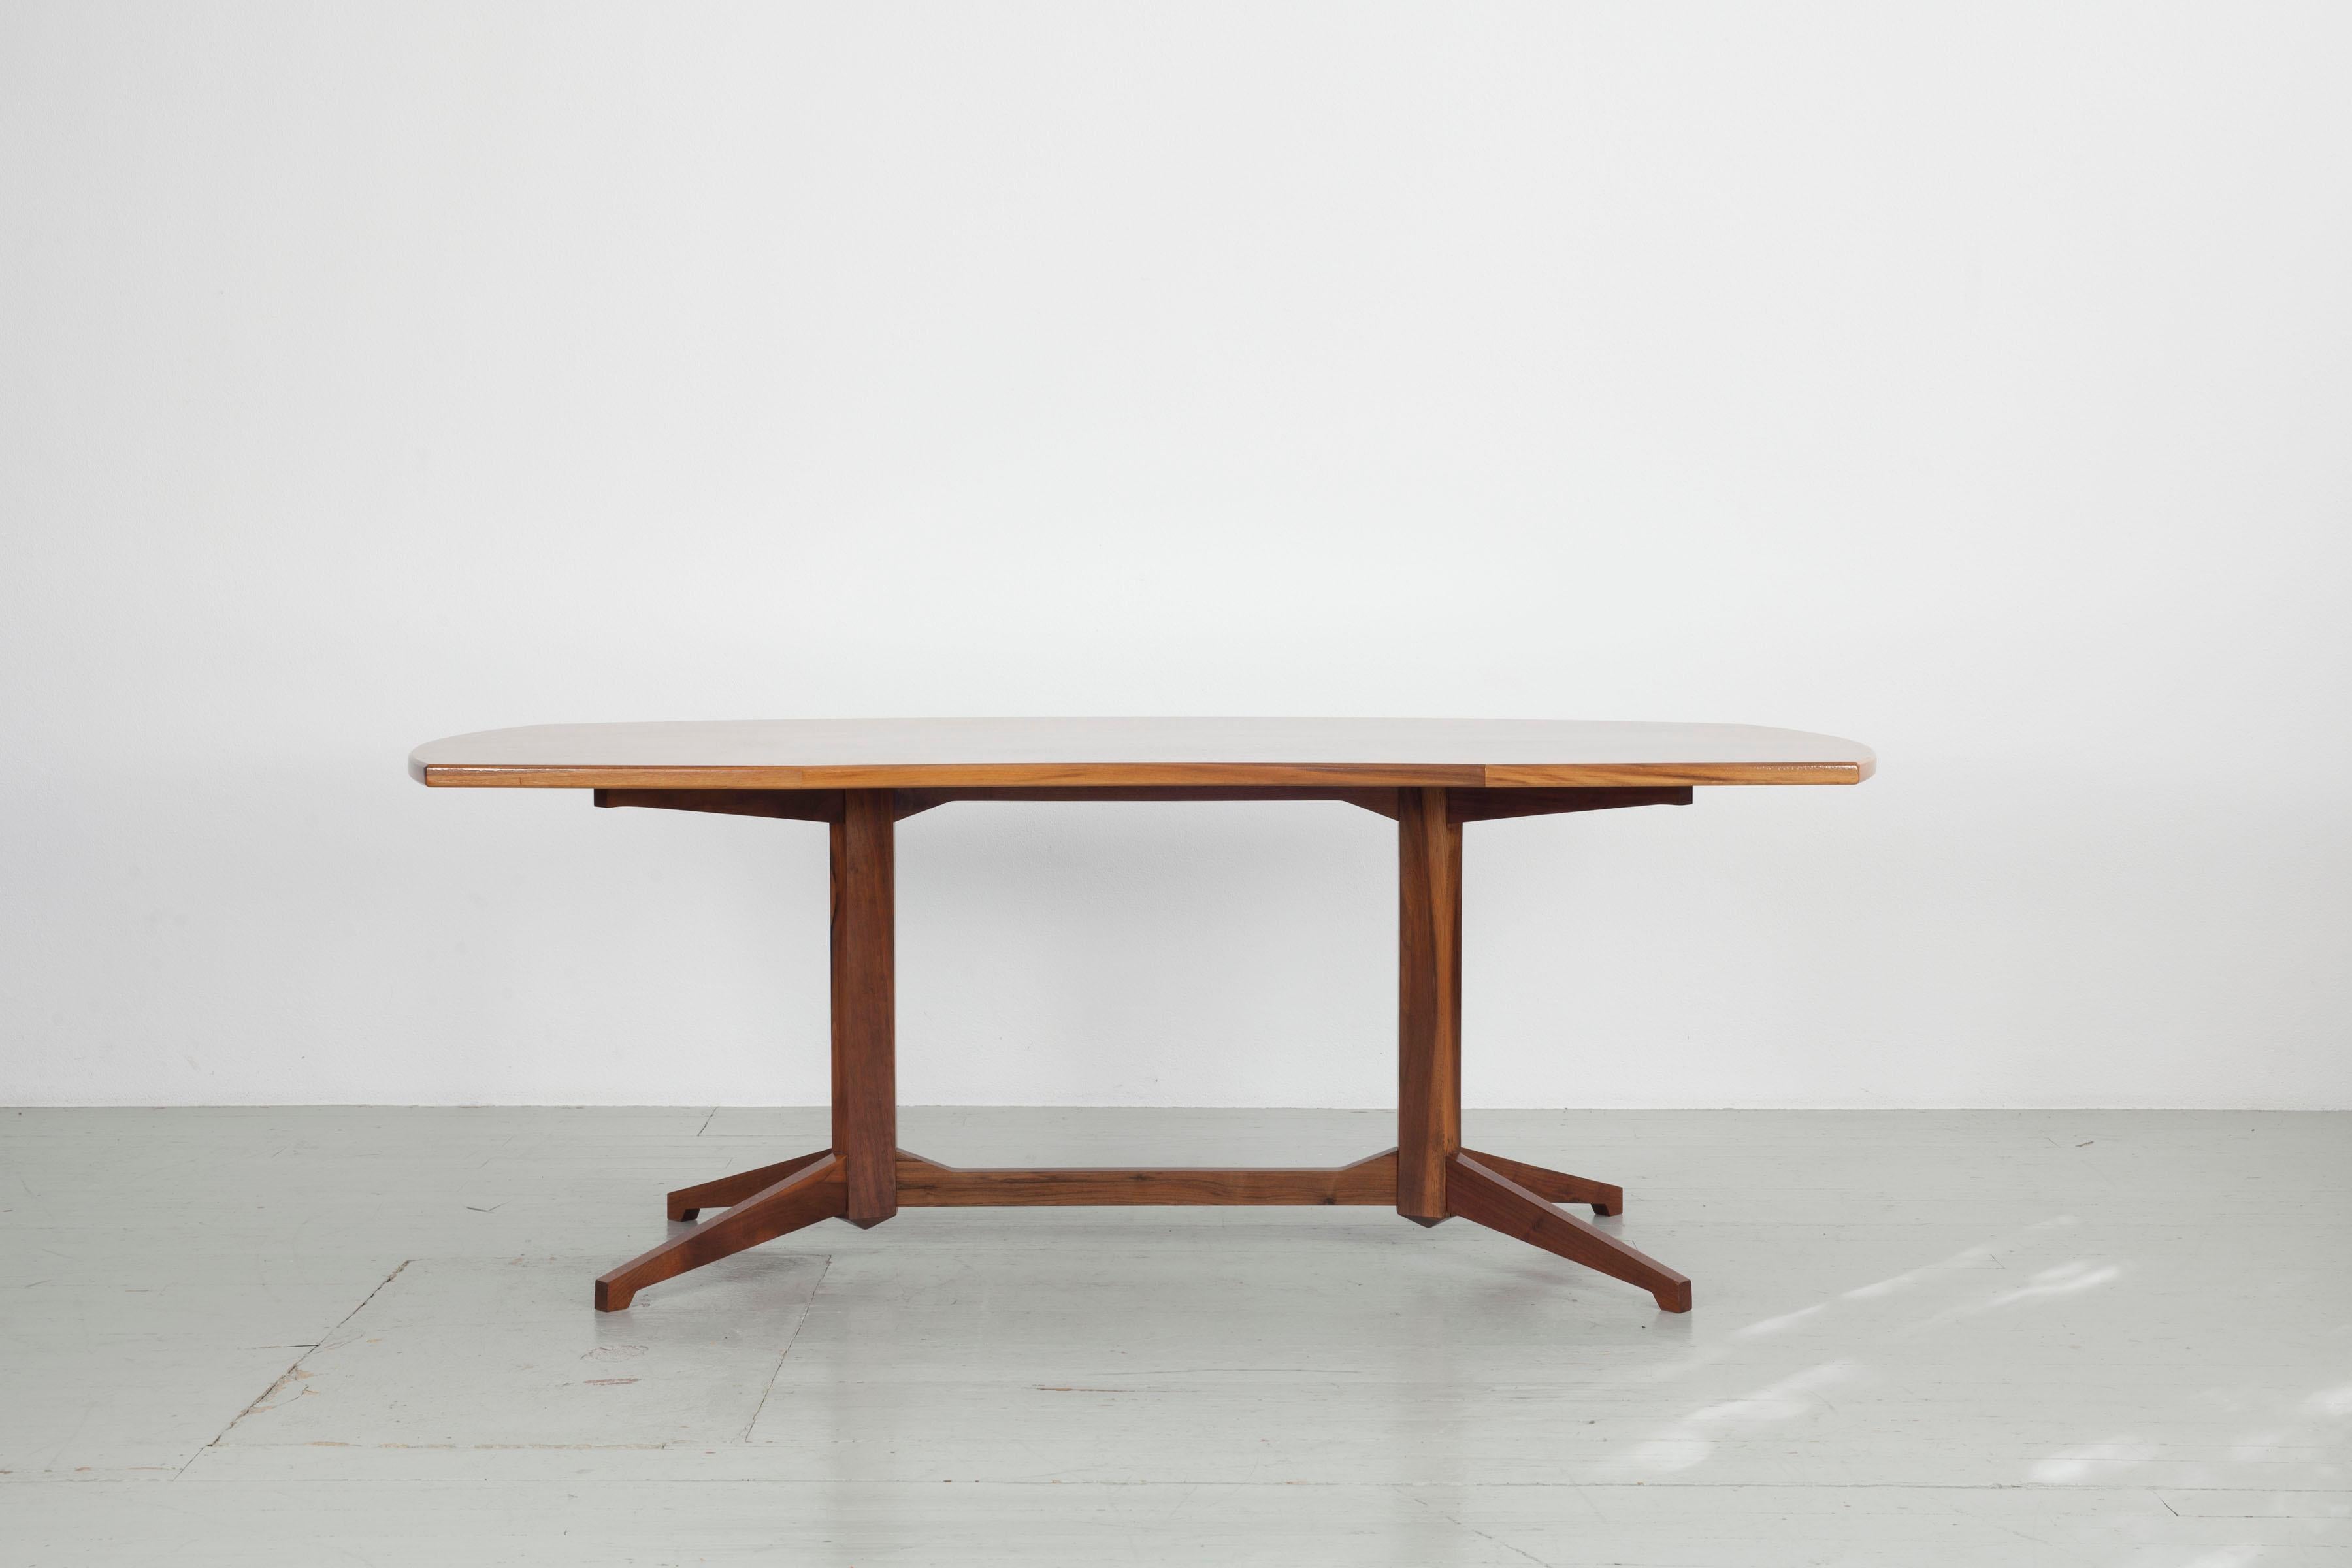 Desk model TL22, designed by Franco Albini and Franca Helg and manufactured by Poggi in 1958.
Table completely restored. Wood: walnut.

Letteratura: Gramigna G., Repertorio del design italiano 1950-2000, Allemandi, Torino, 2003, p. 123
